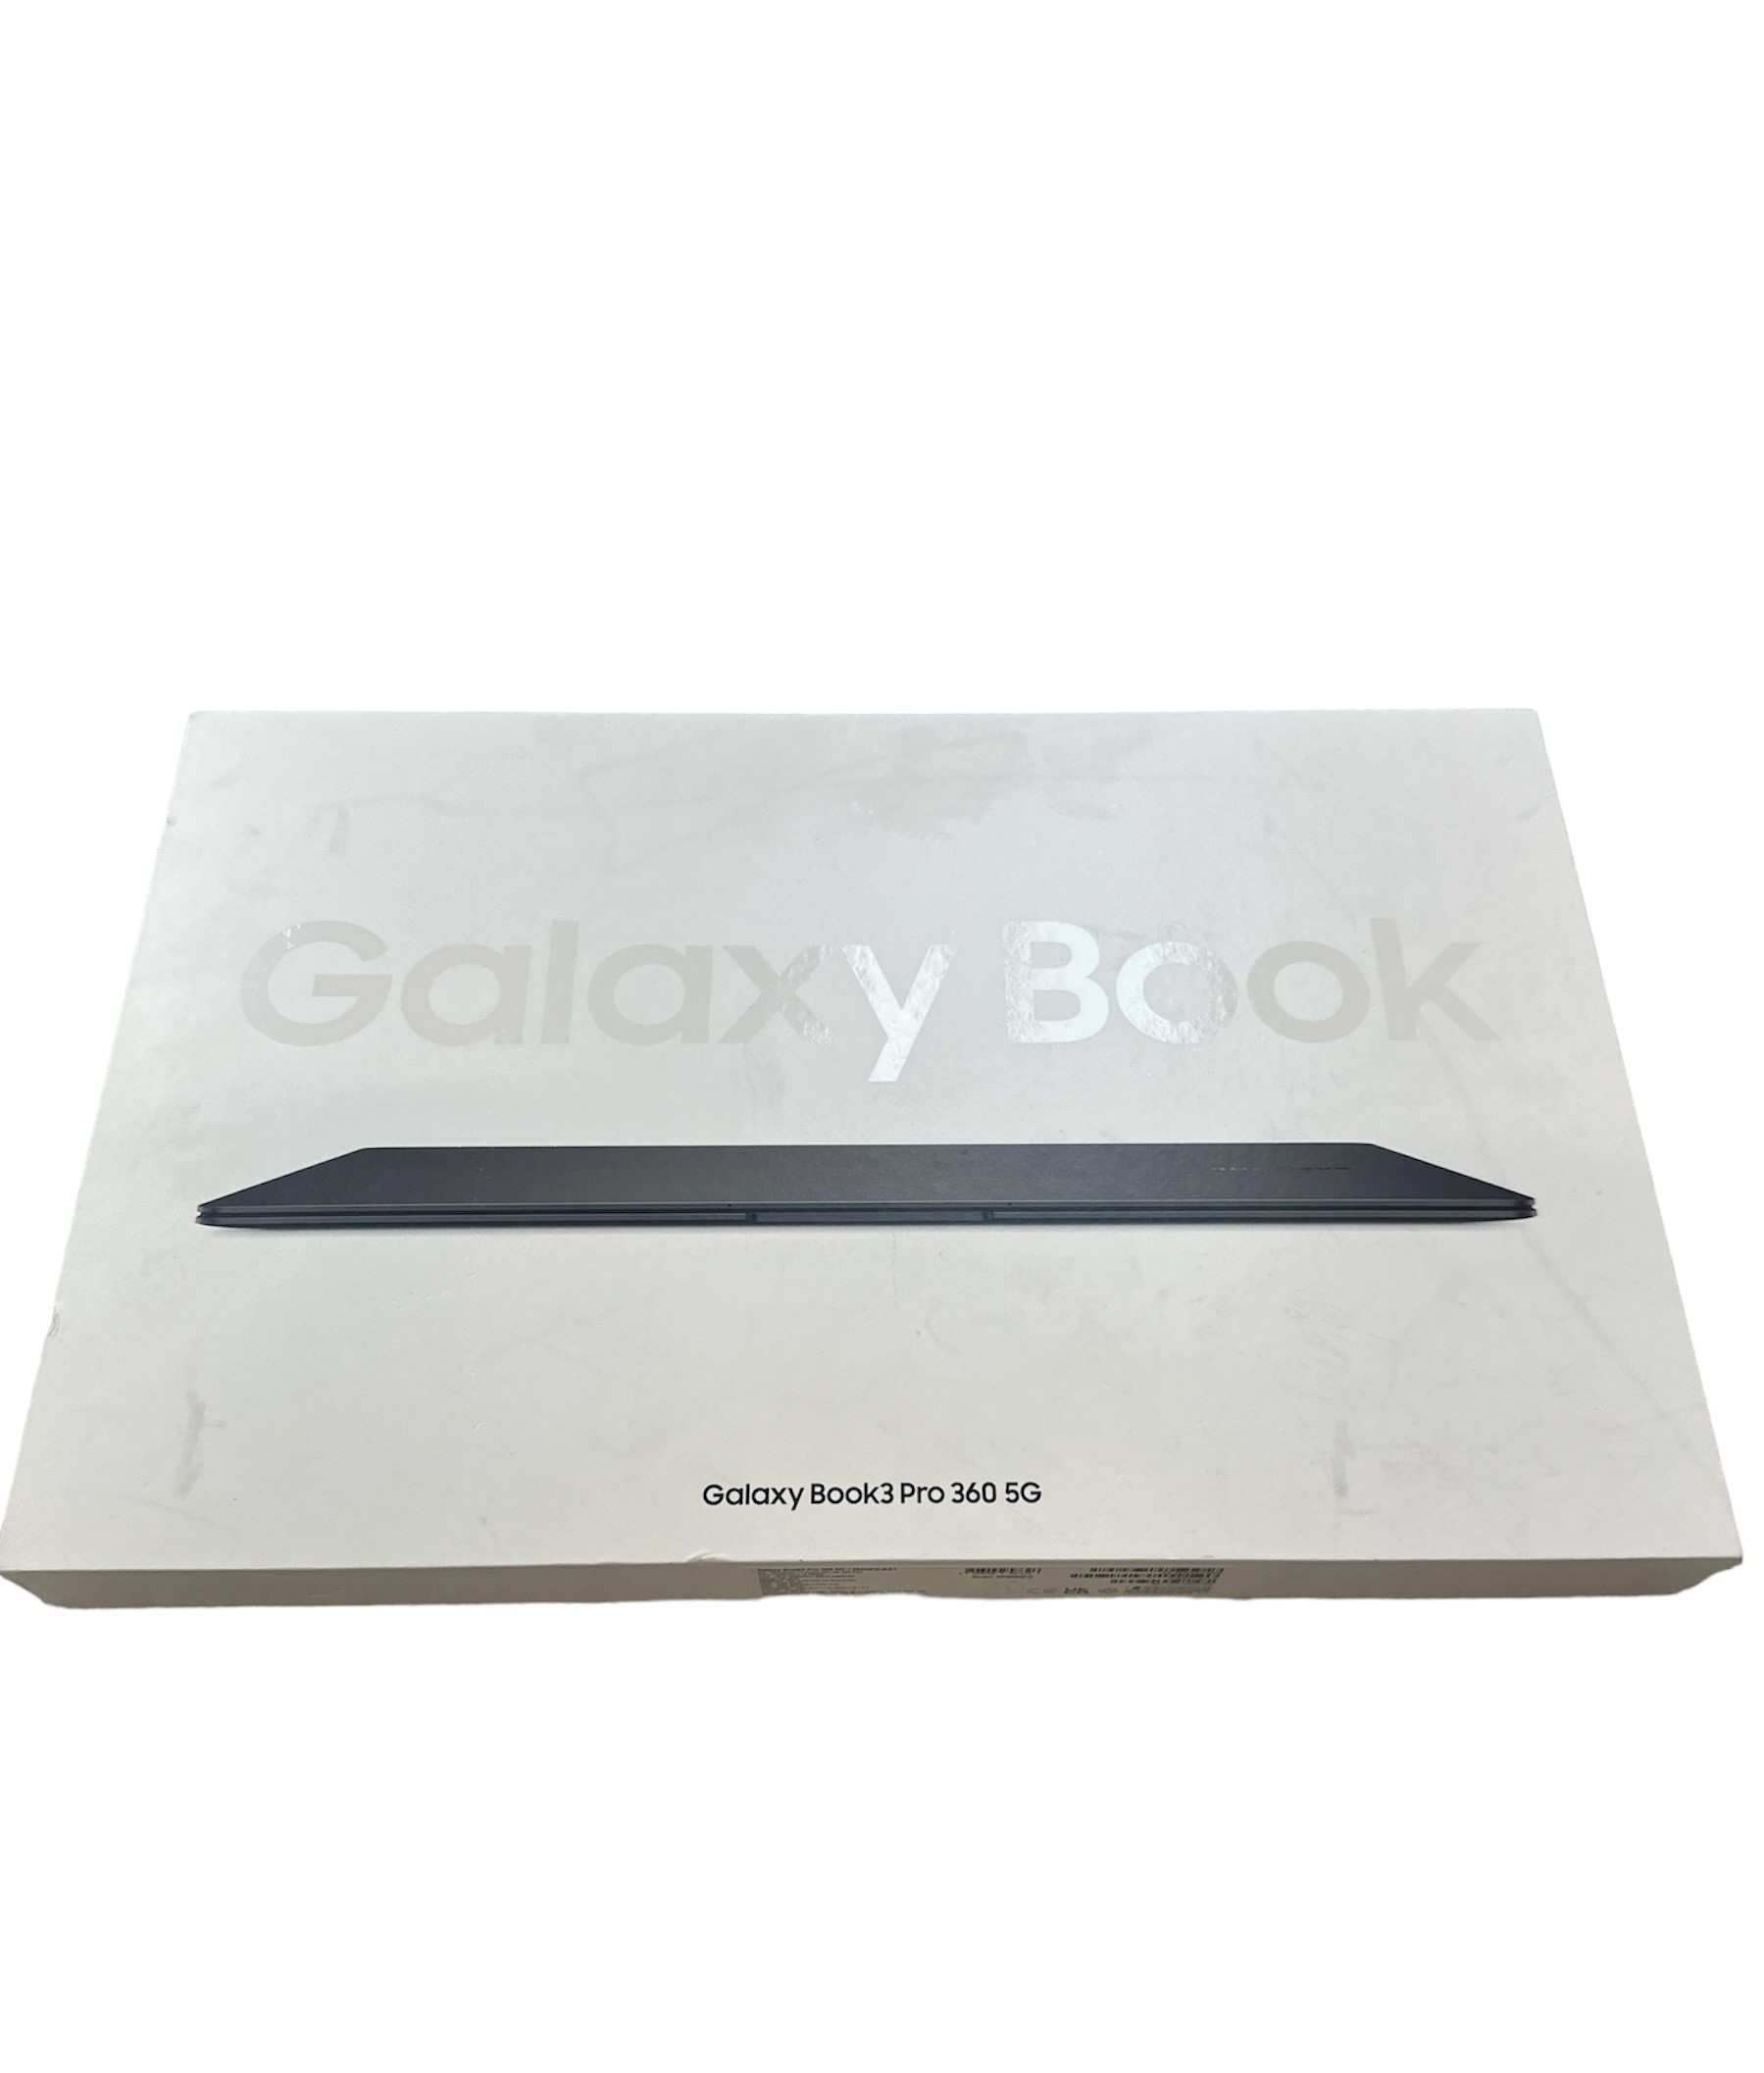 Samsung Galaxy Book3 Pro 360 5G - Boxed - i5 8GB 256GB